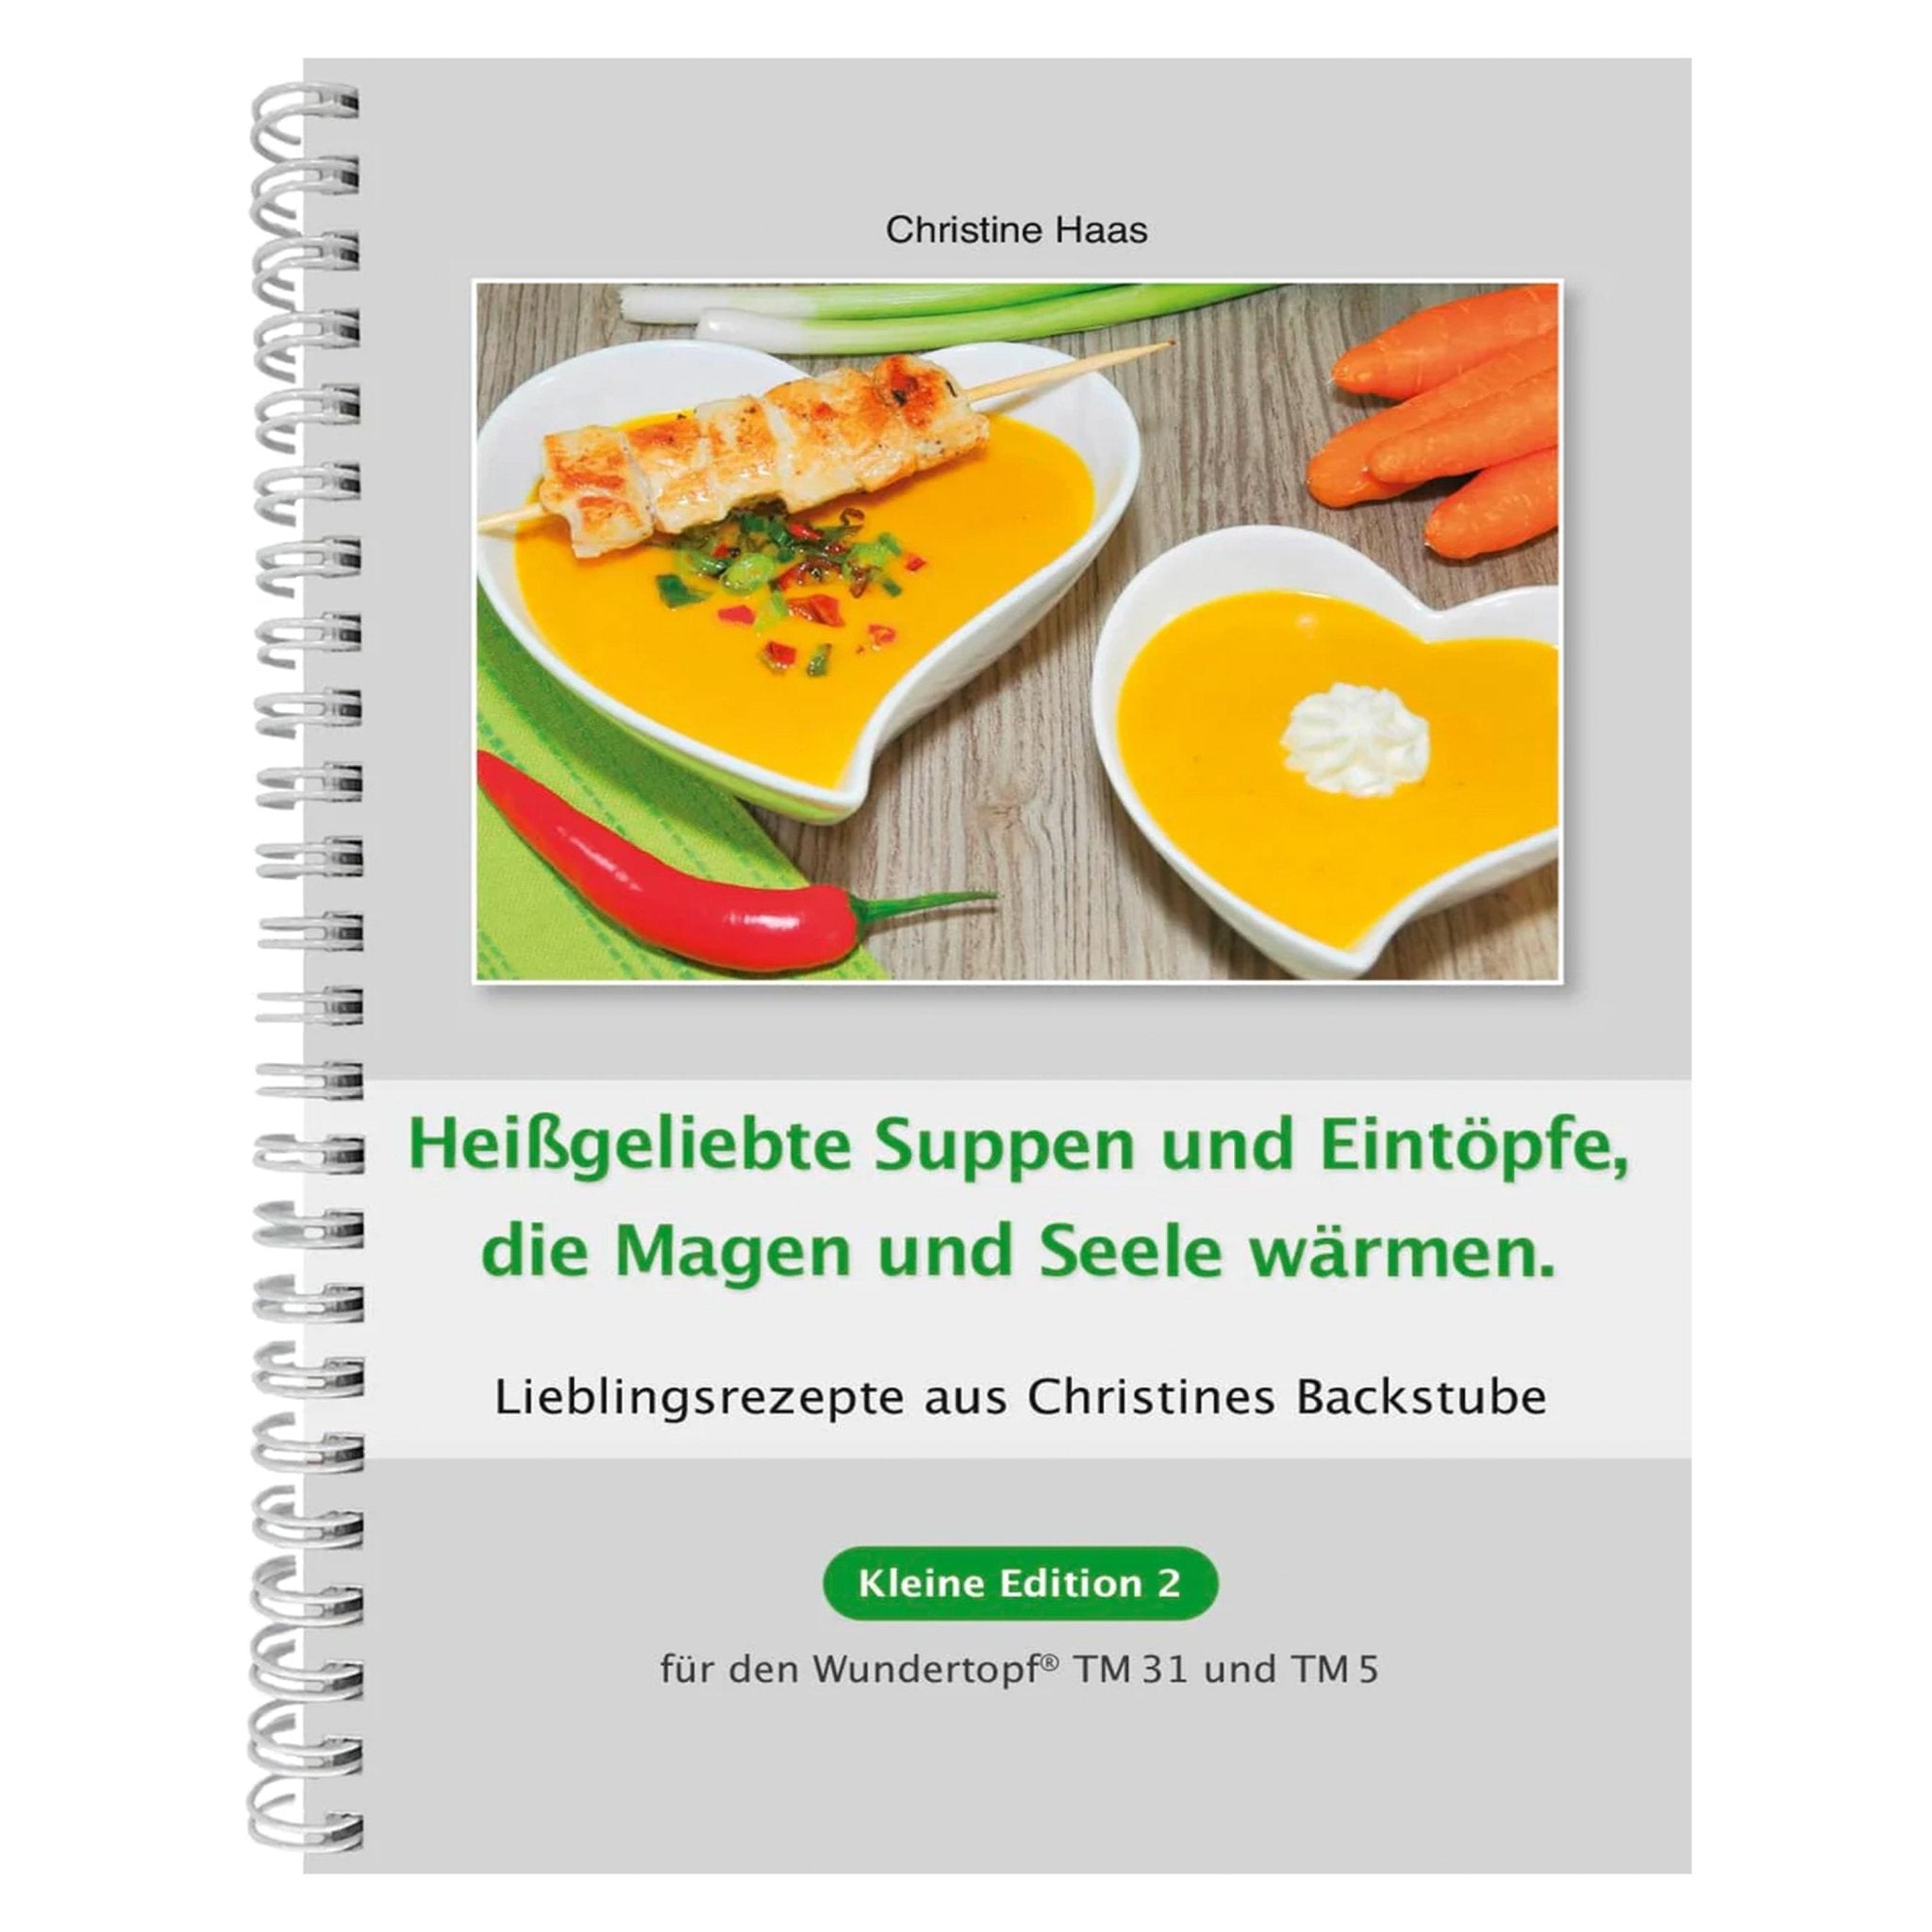 Heißgeliebte Suppen und Eintöpfe | Christine Haas | Kleine Edition - Band 2 - Wundermix GmbH